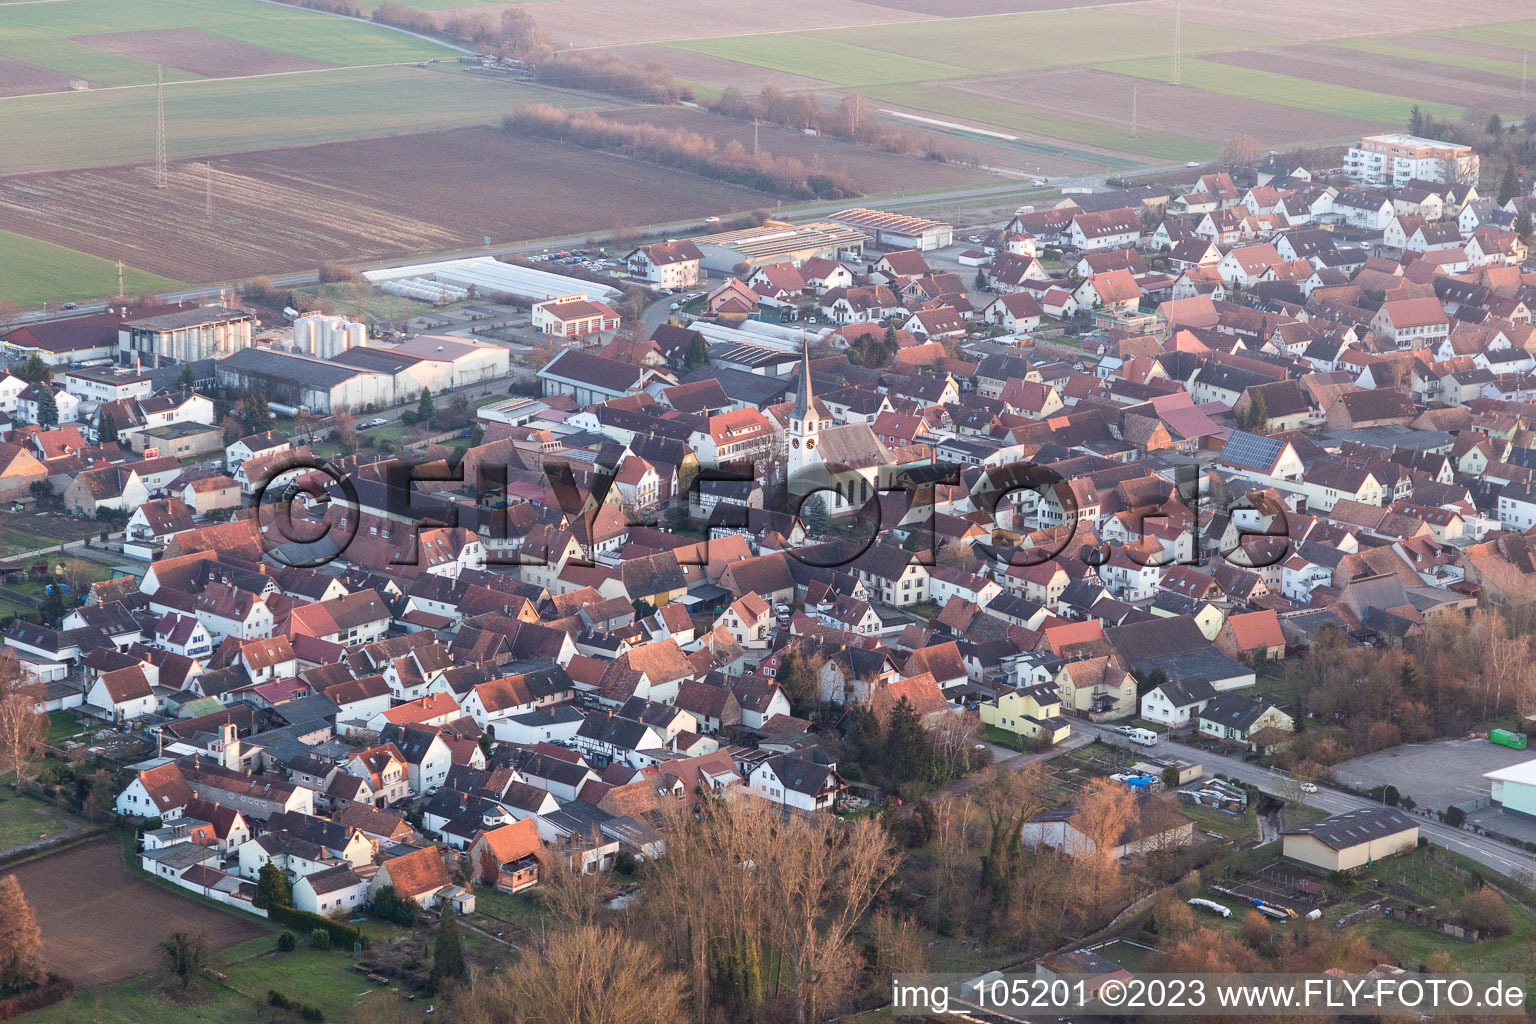 Niederhochstadt in the state Rhineland-Palatinate, Germany